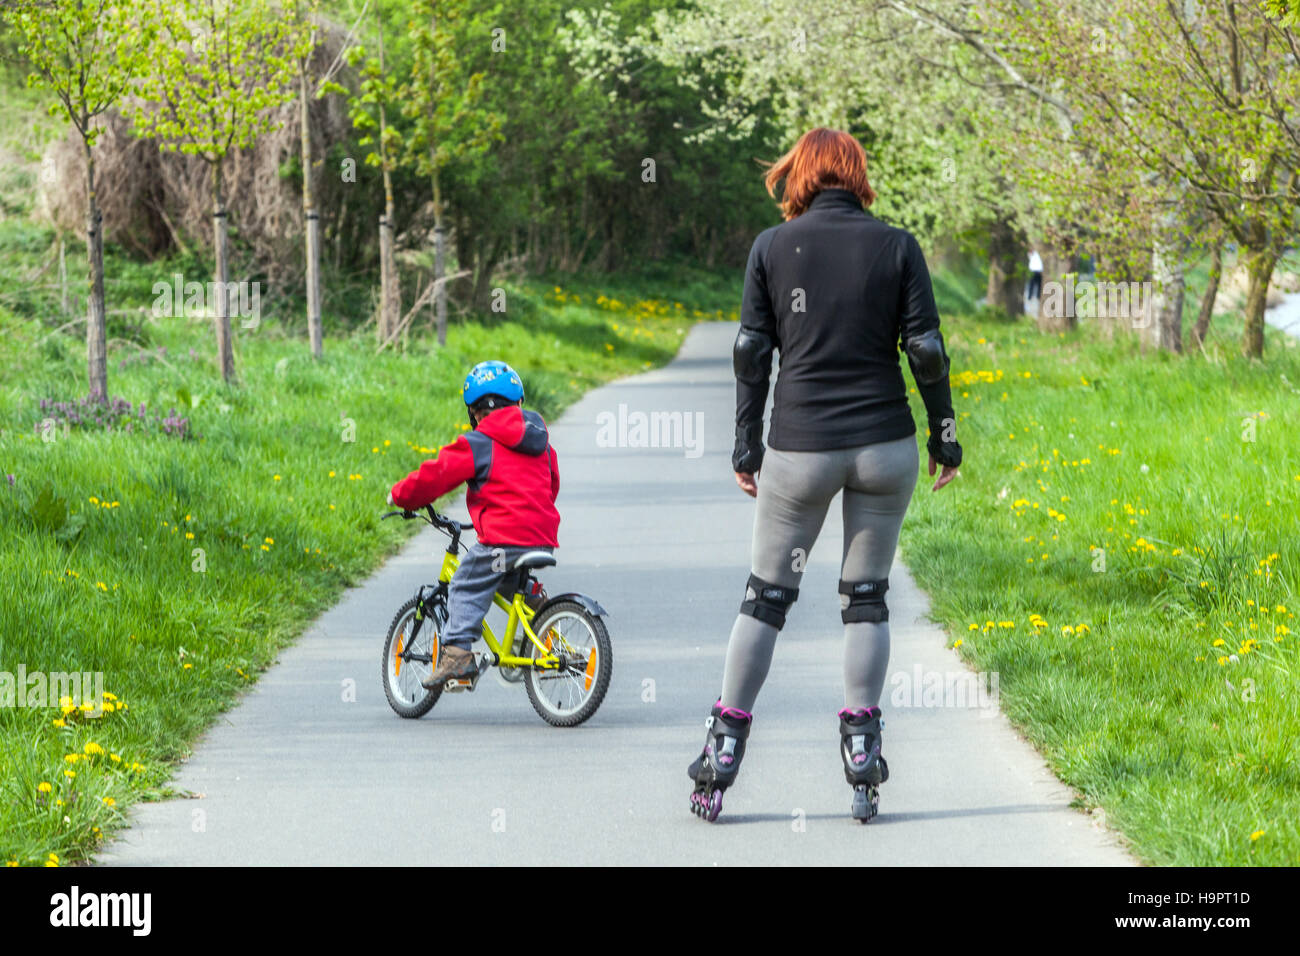 La mère et l'enfant sur un vélo, faire du vélo sur une piste cyclable Banque D'Images